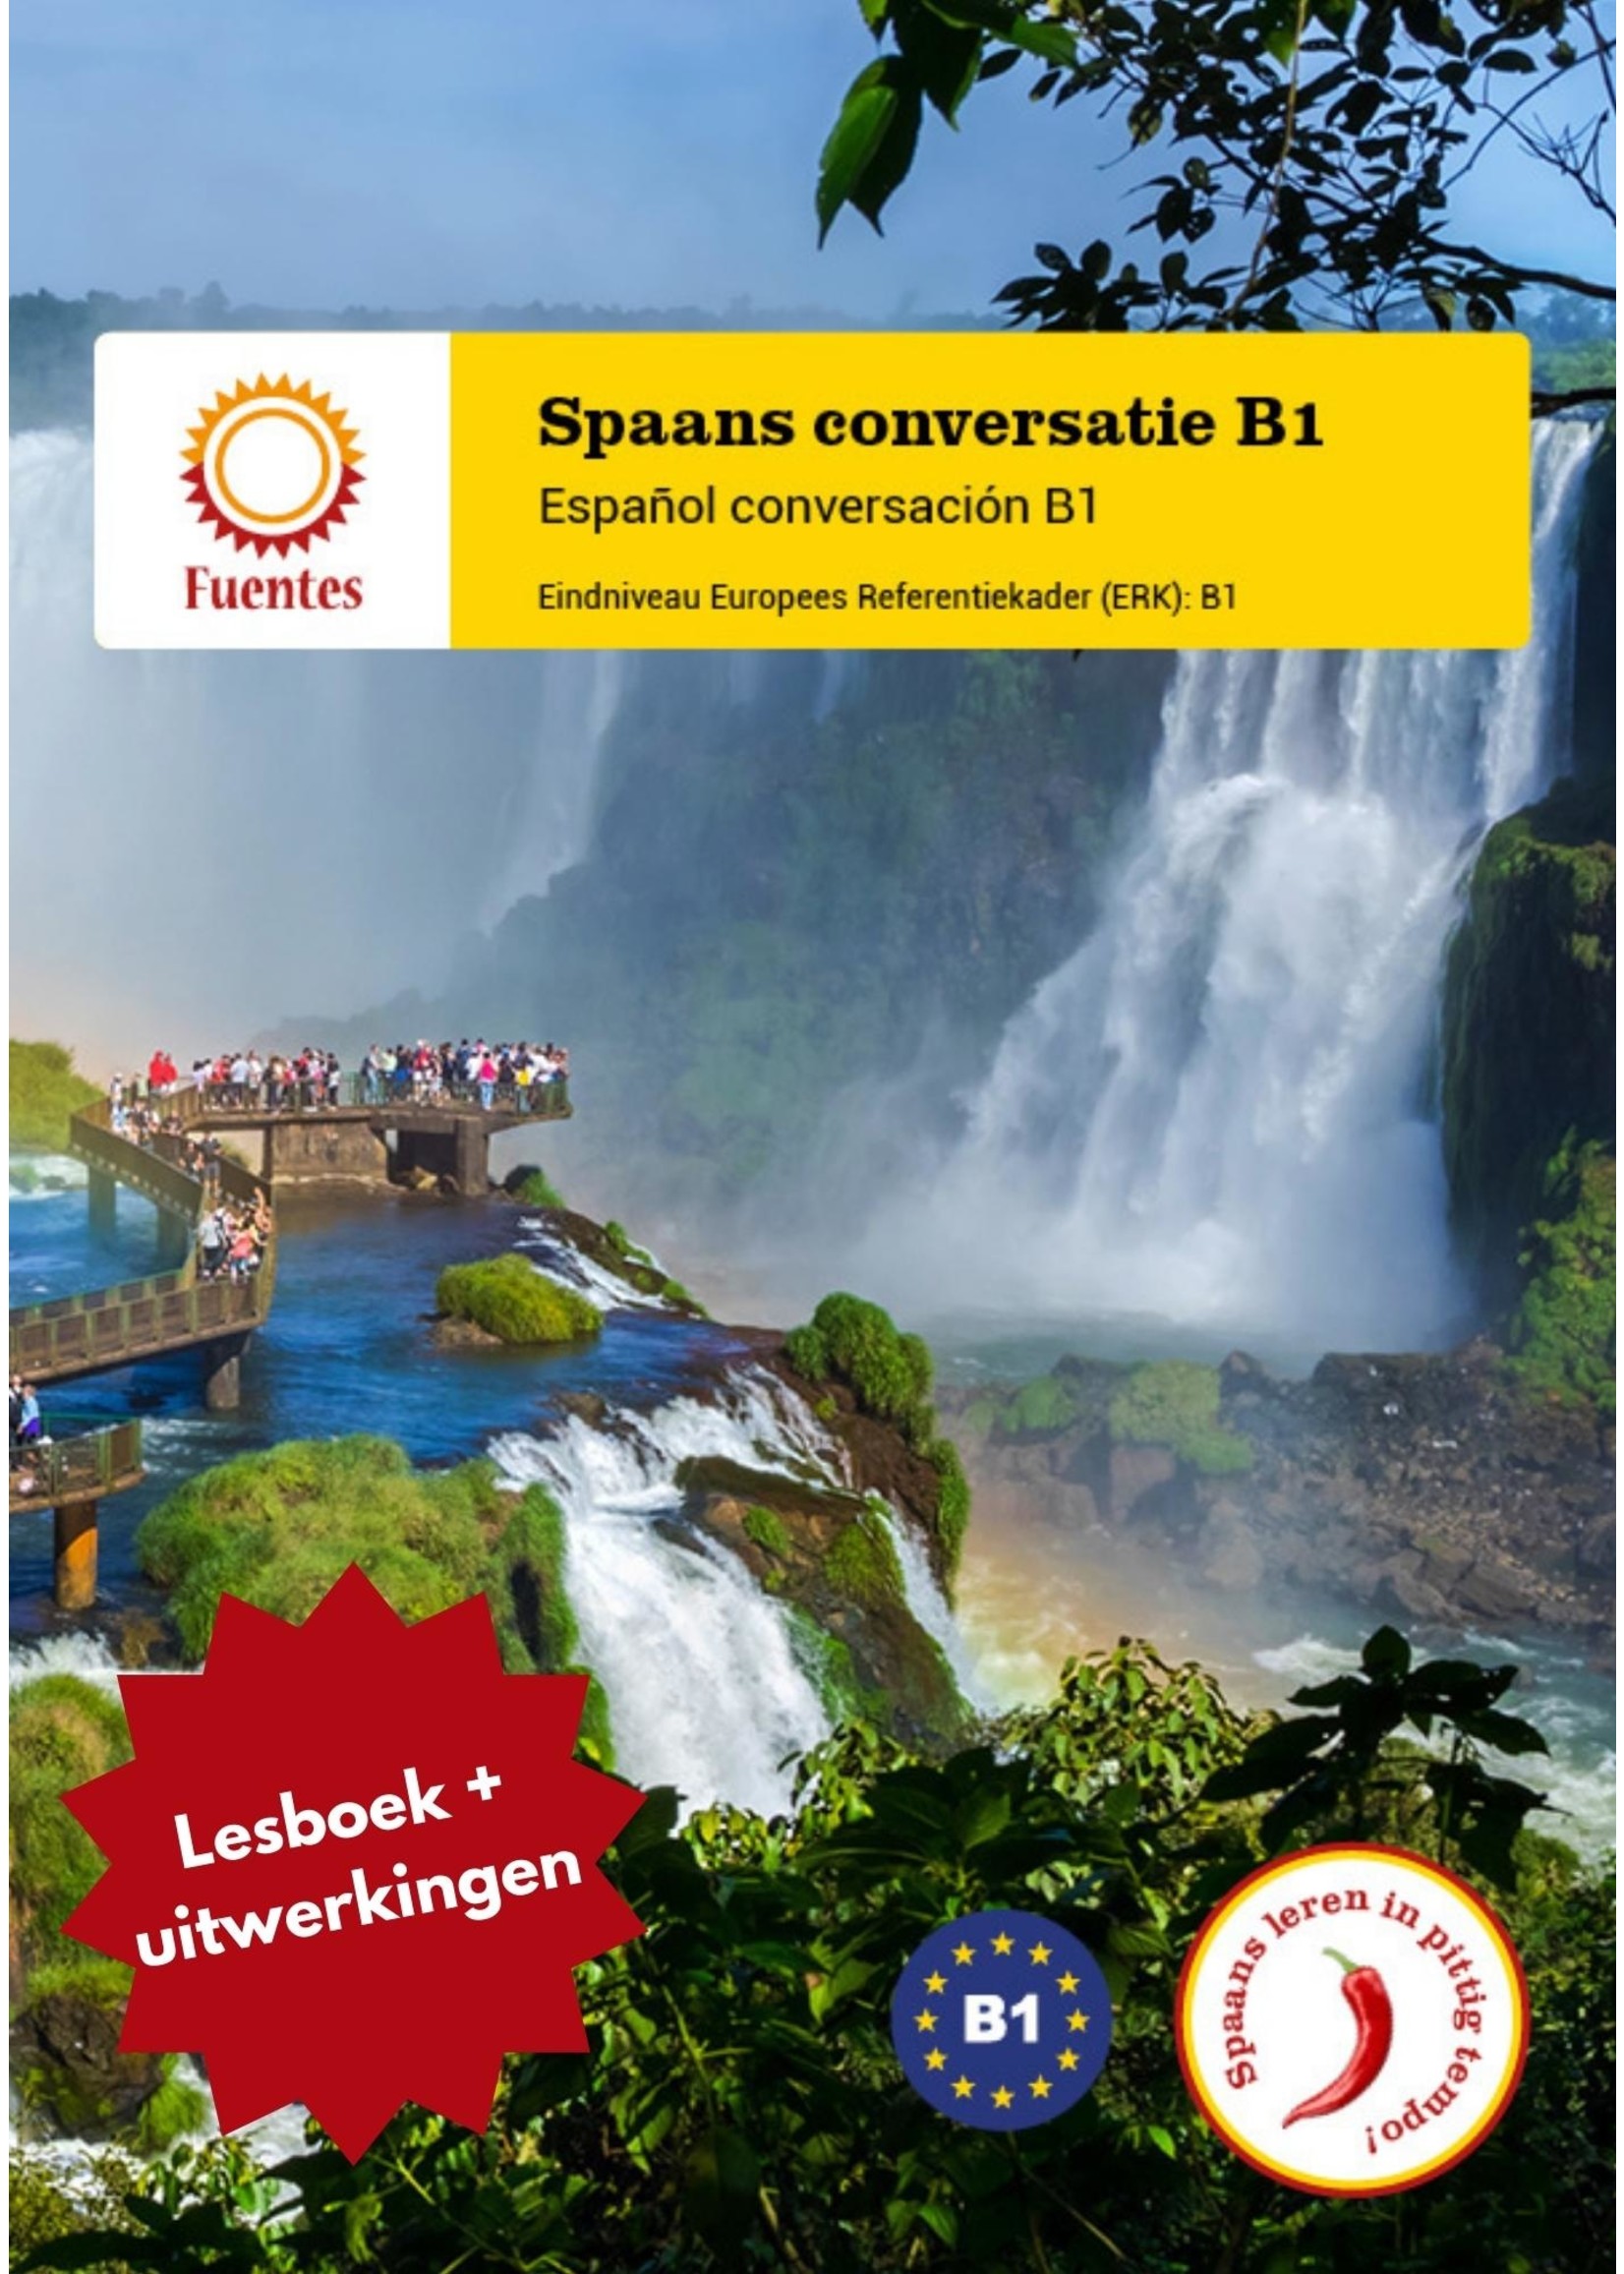 Spaans conversatie B1 - lesboek + uitwerkingen